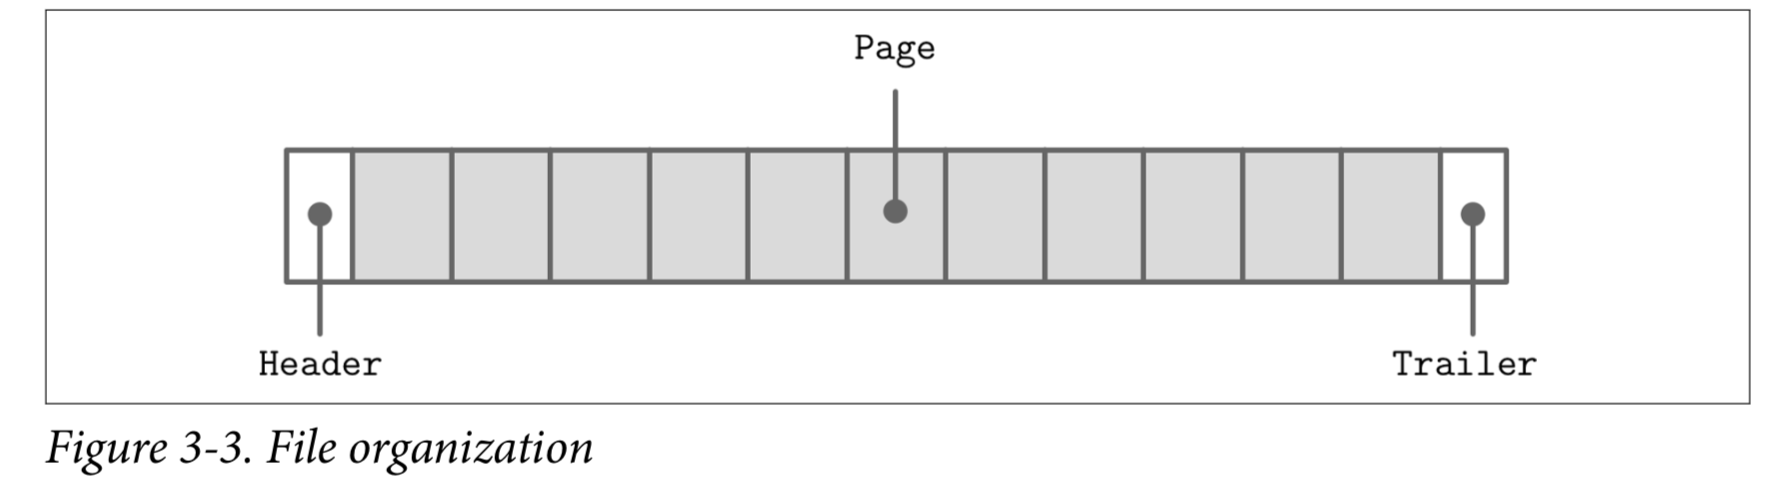 Figure 3-3. File organization